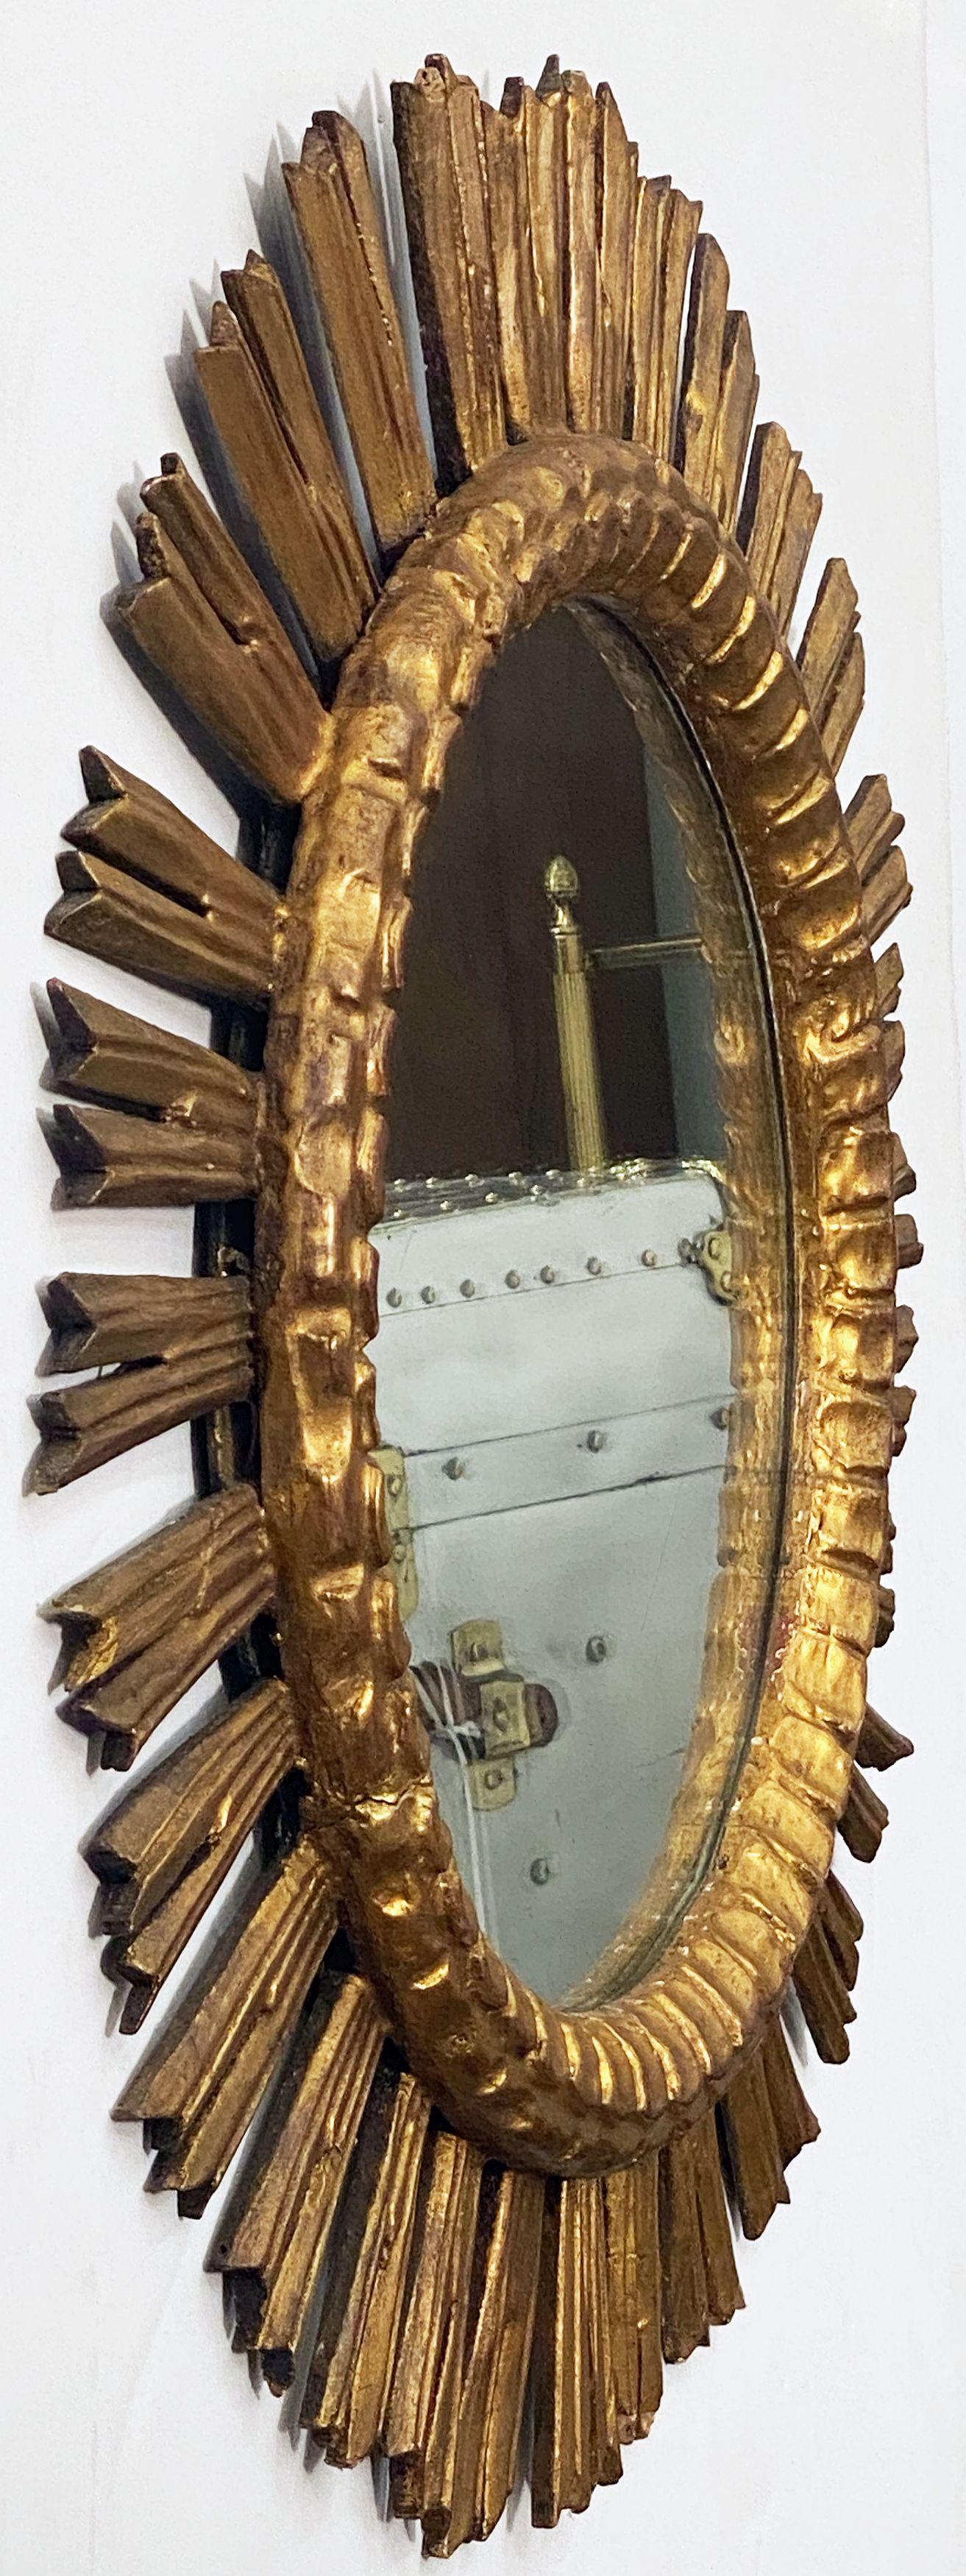 Un beau grand miroir français doré en forme de soleil (ou d'étoile) avec un centre en verre miroir rond dans un cadre moulé.

Diamètre de 25 pouces.